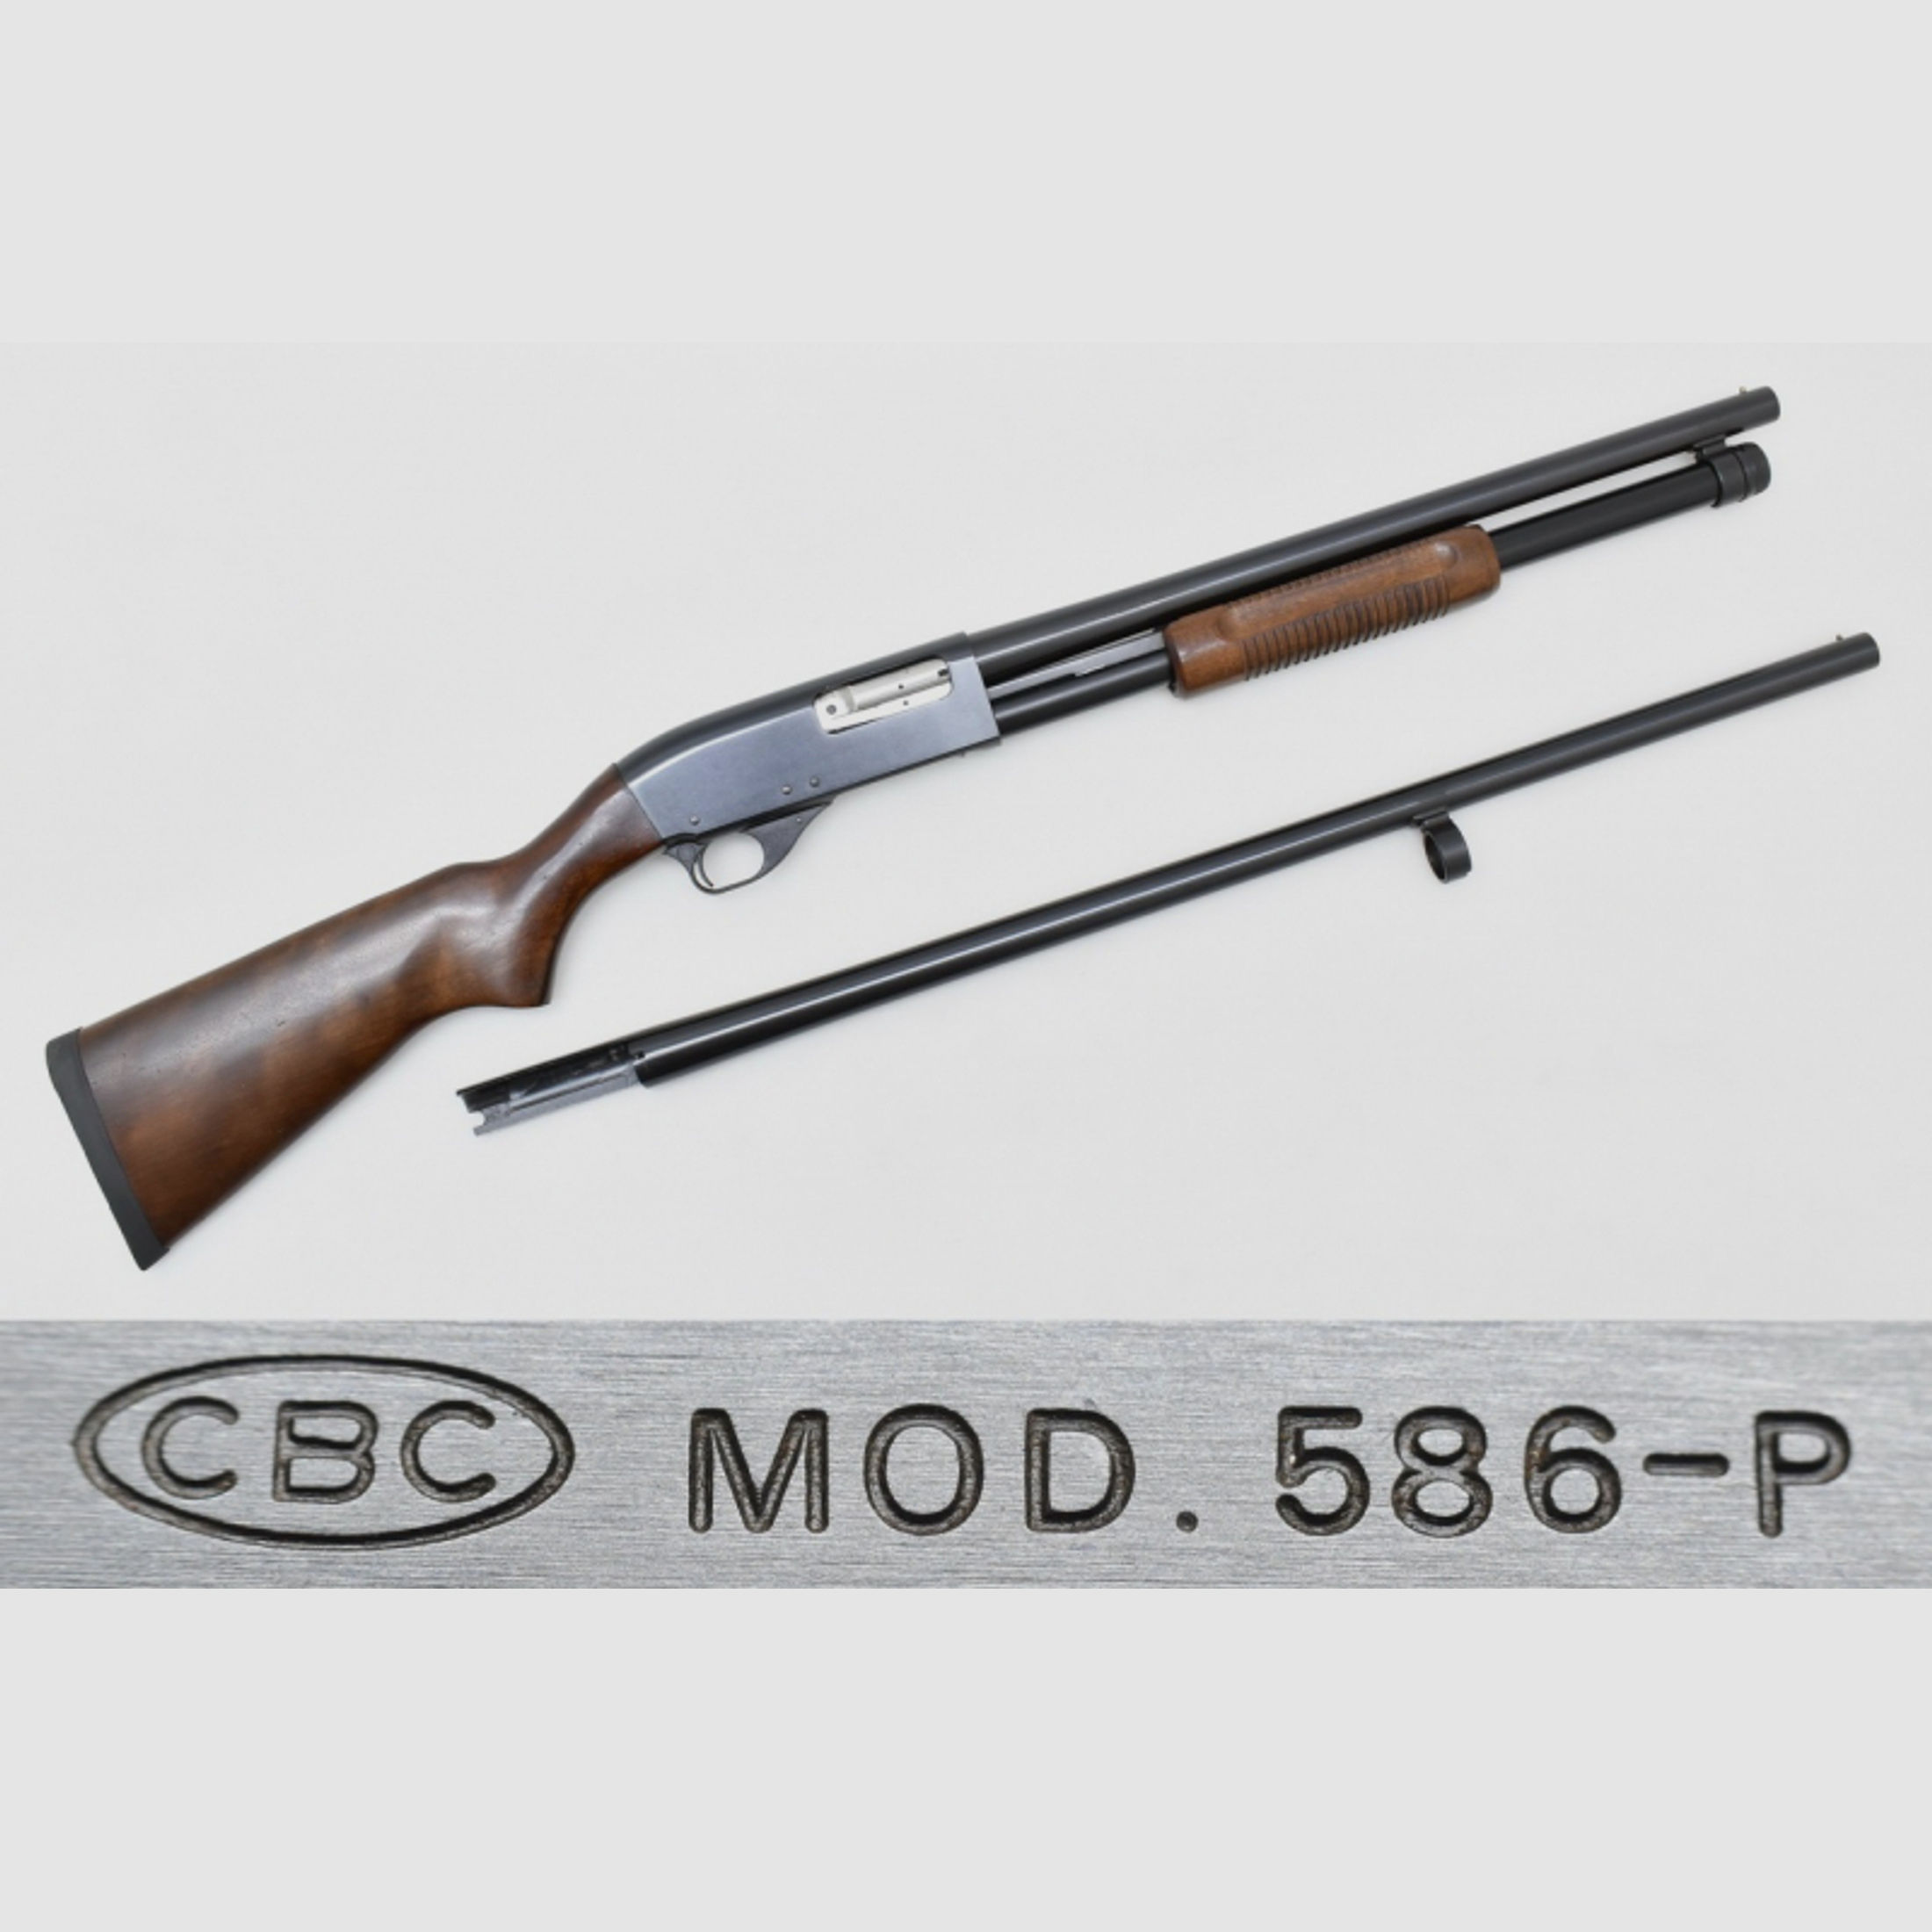 CBC " Pump - Action " Repetierflinte Modell 586 im Kal. 12/76 Magnum mit 28" Austauschlauf